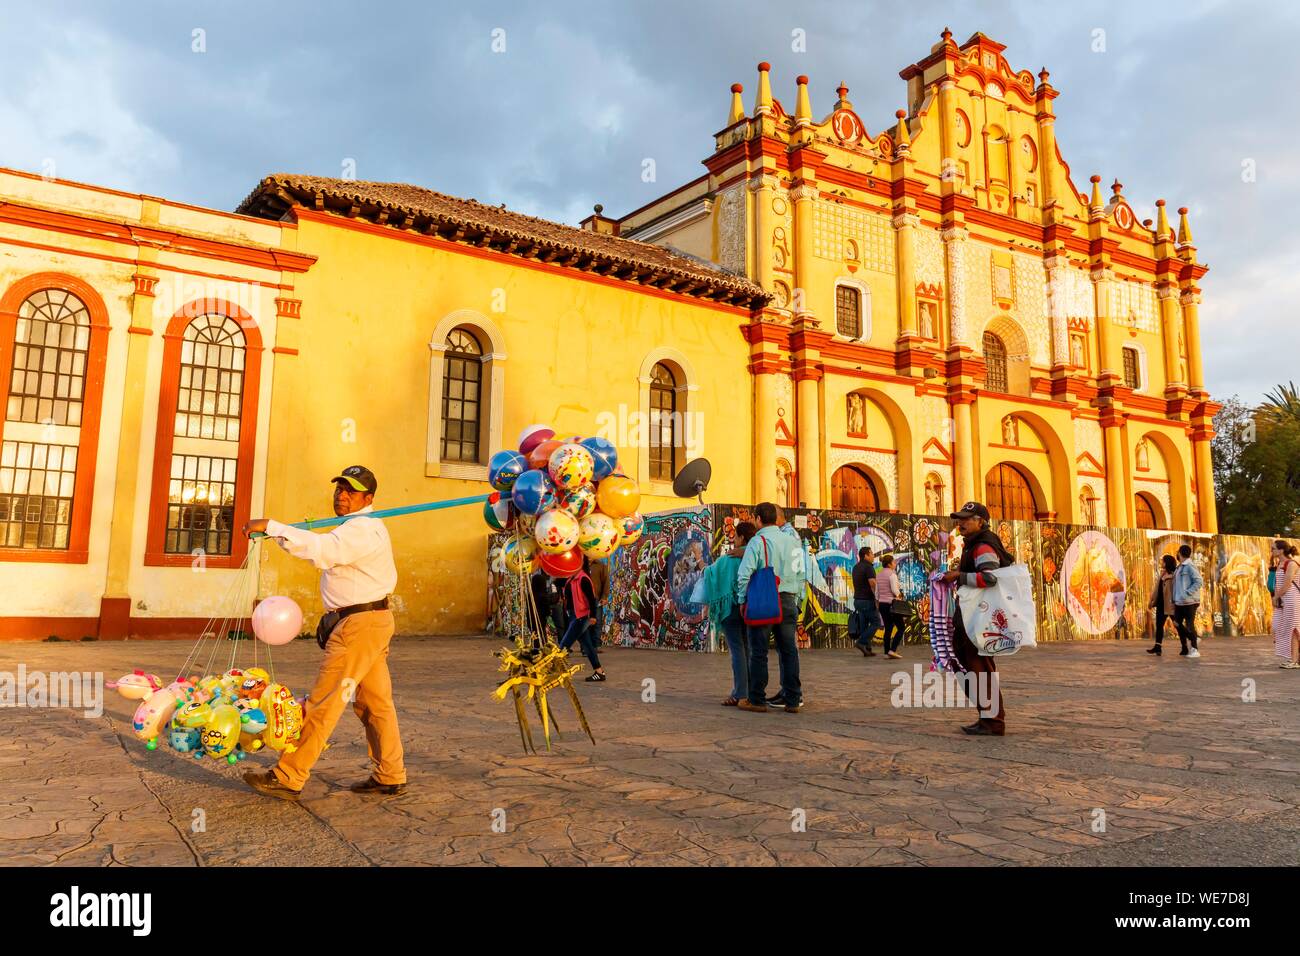 Mexico, Chiapas state, San Cristobal de las Casas, ballons seller before the cathedral and the 31 de Marzo square Stock Photo